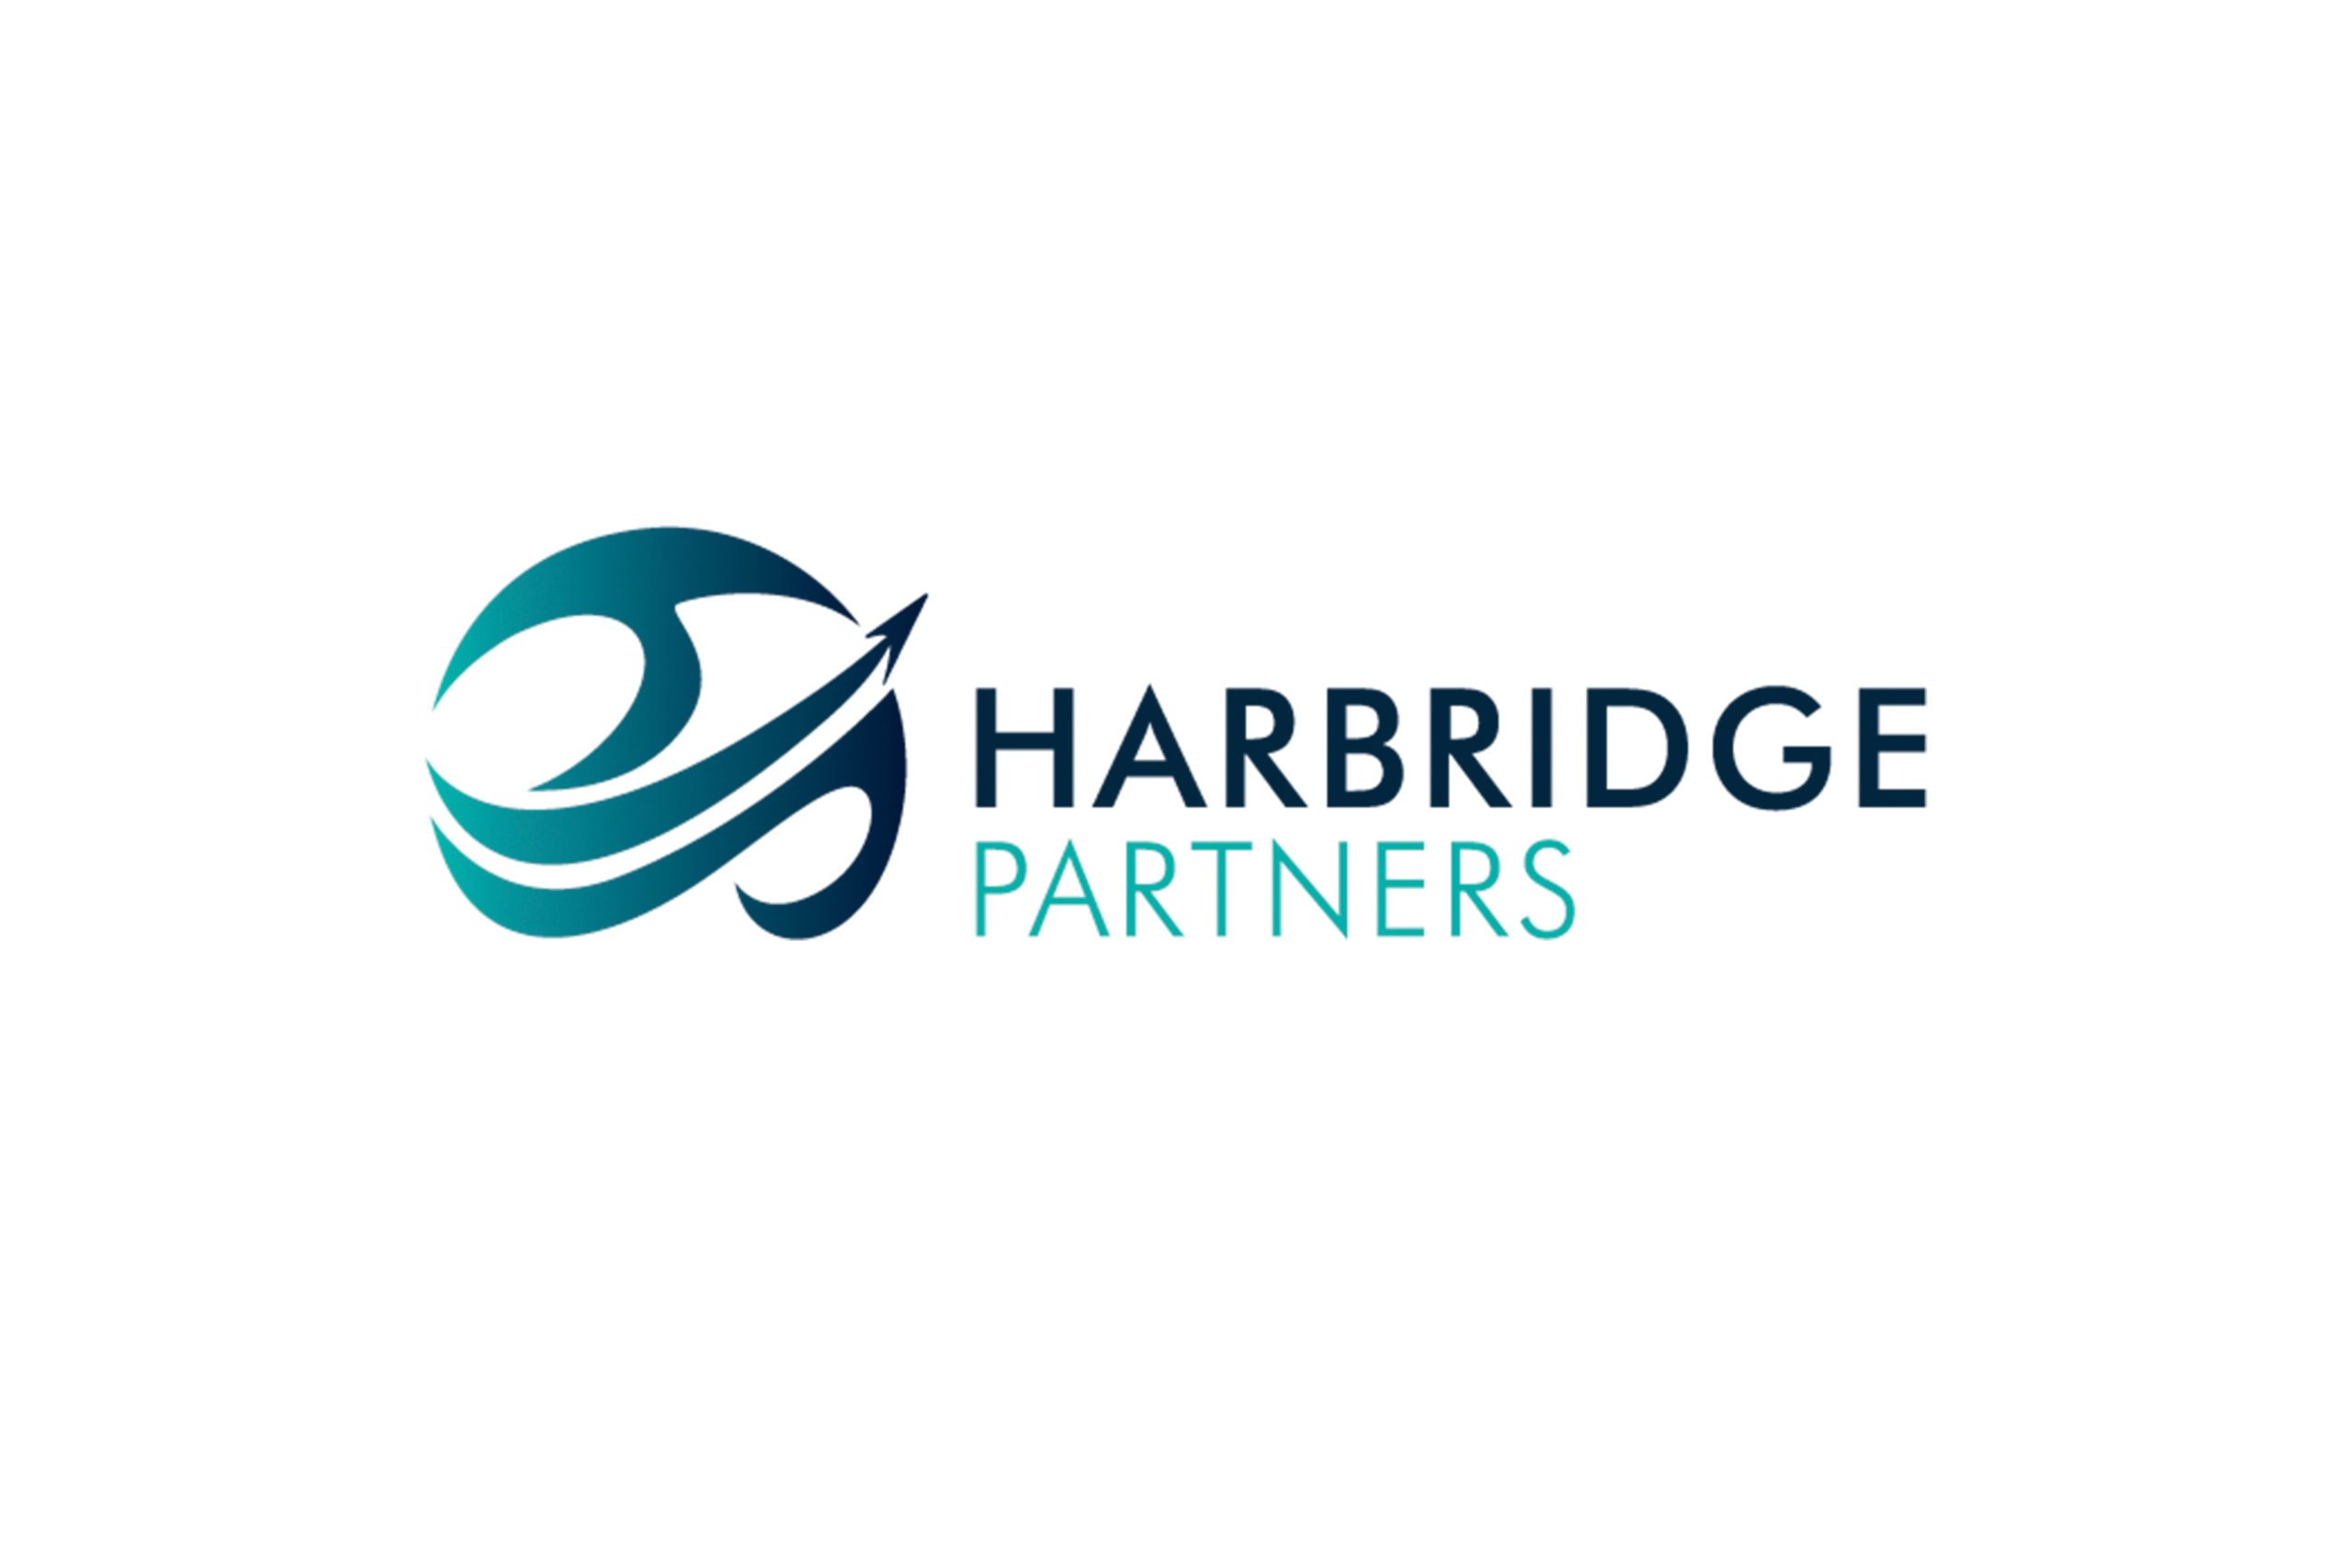 Harbridge Partners full logo